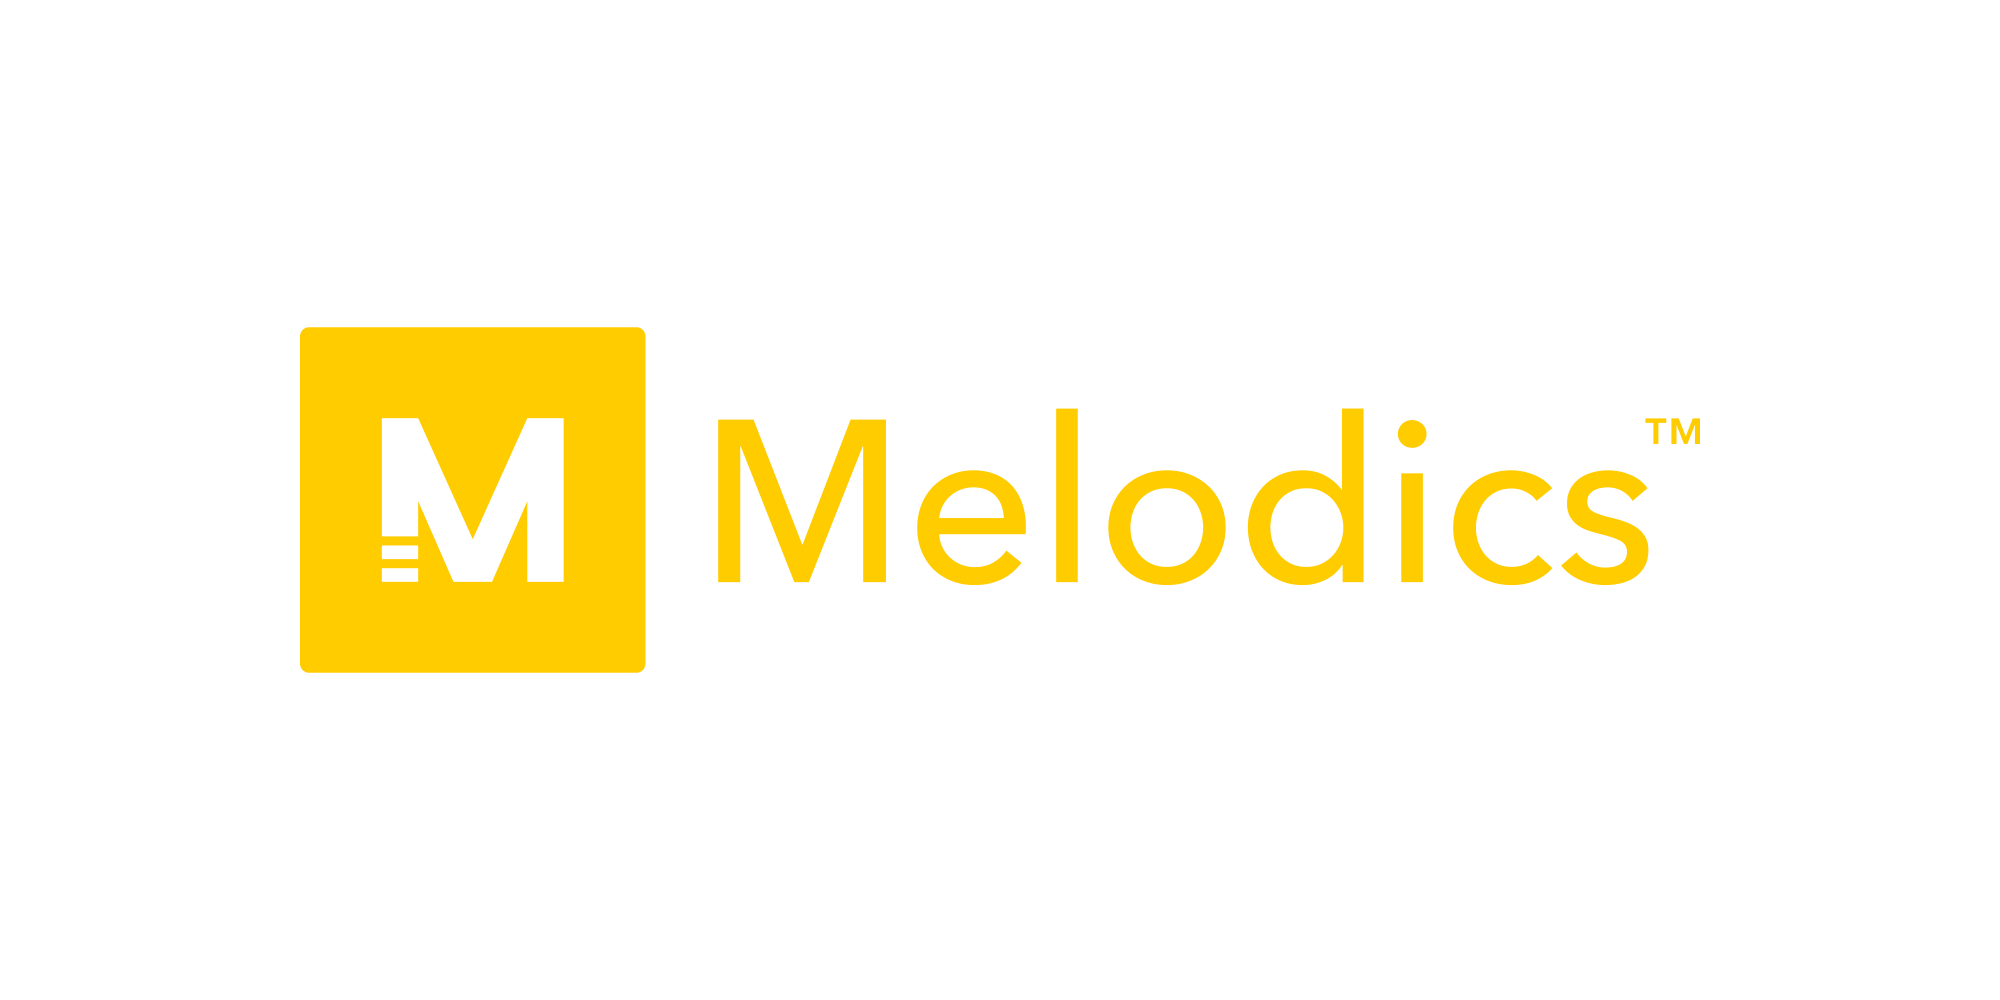 The main Melodics logo